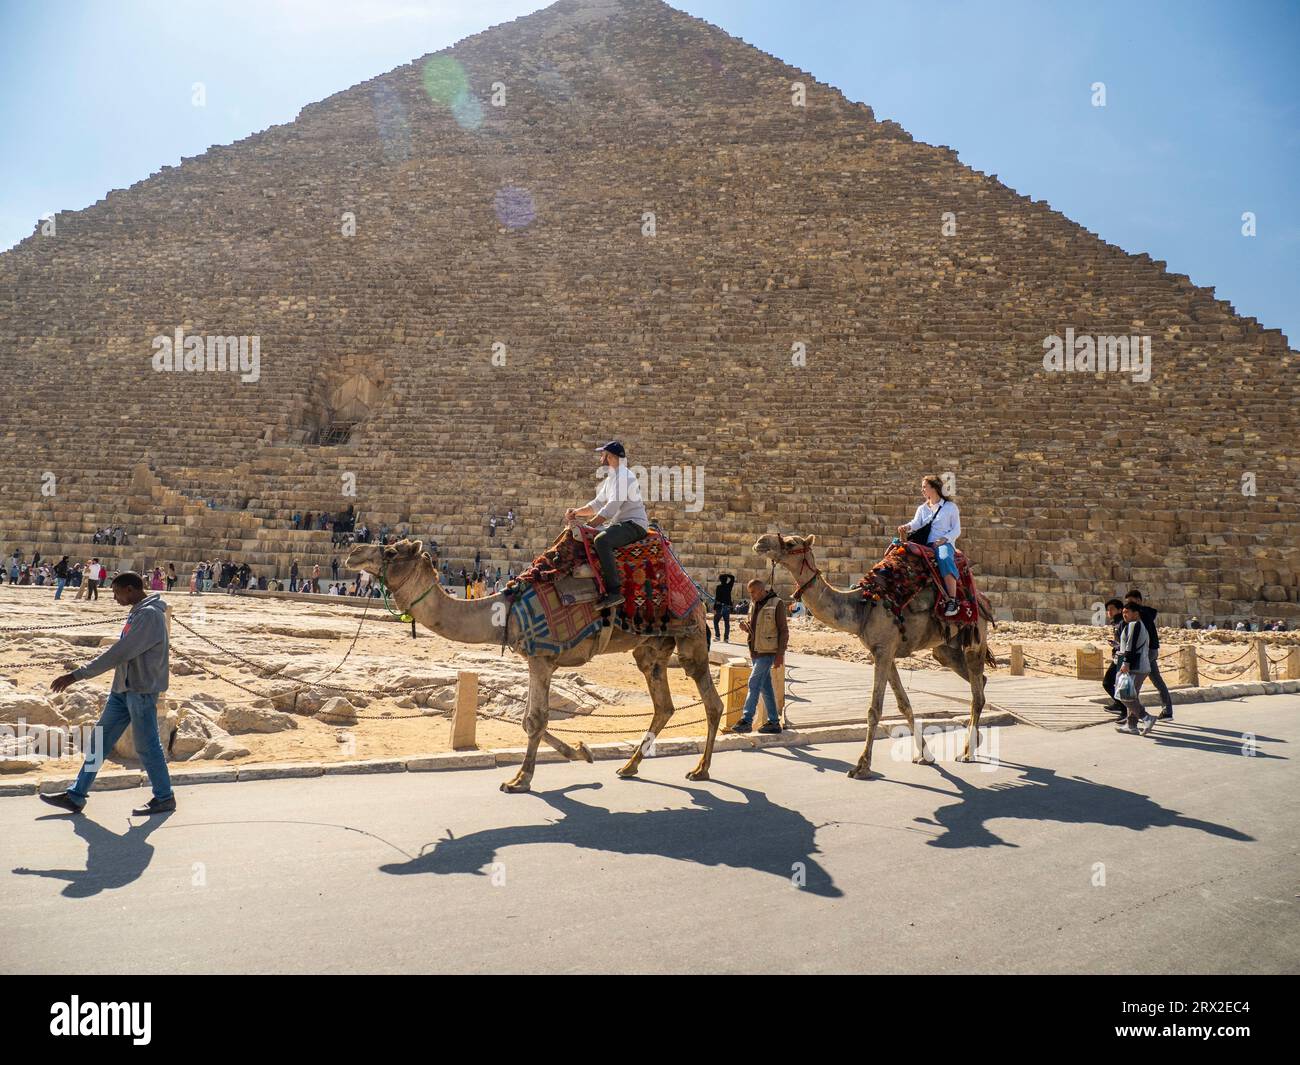 Touriste sur une promenade à dos de chameau devant la Grande Pyramide de Gizeh, la plus ancienne des sept merveilles du monde, près du Caire, en Égypte Banque D'Images